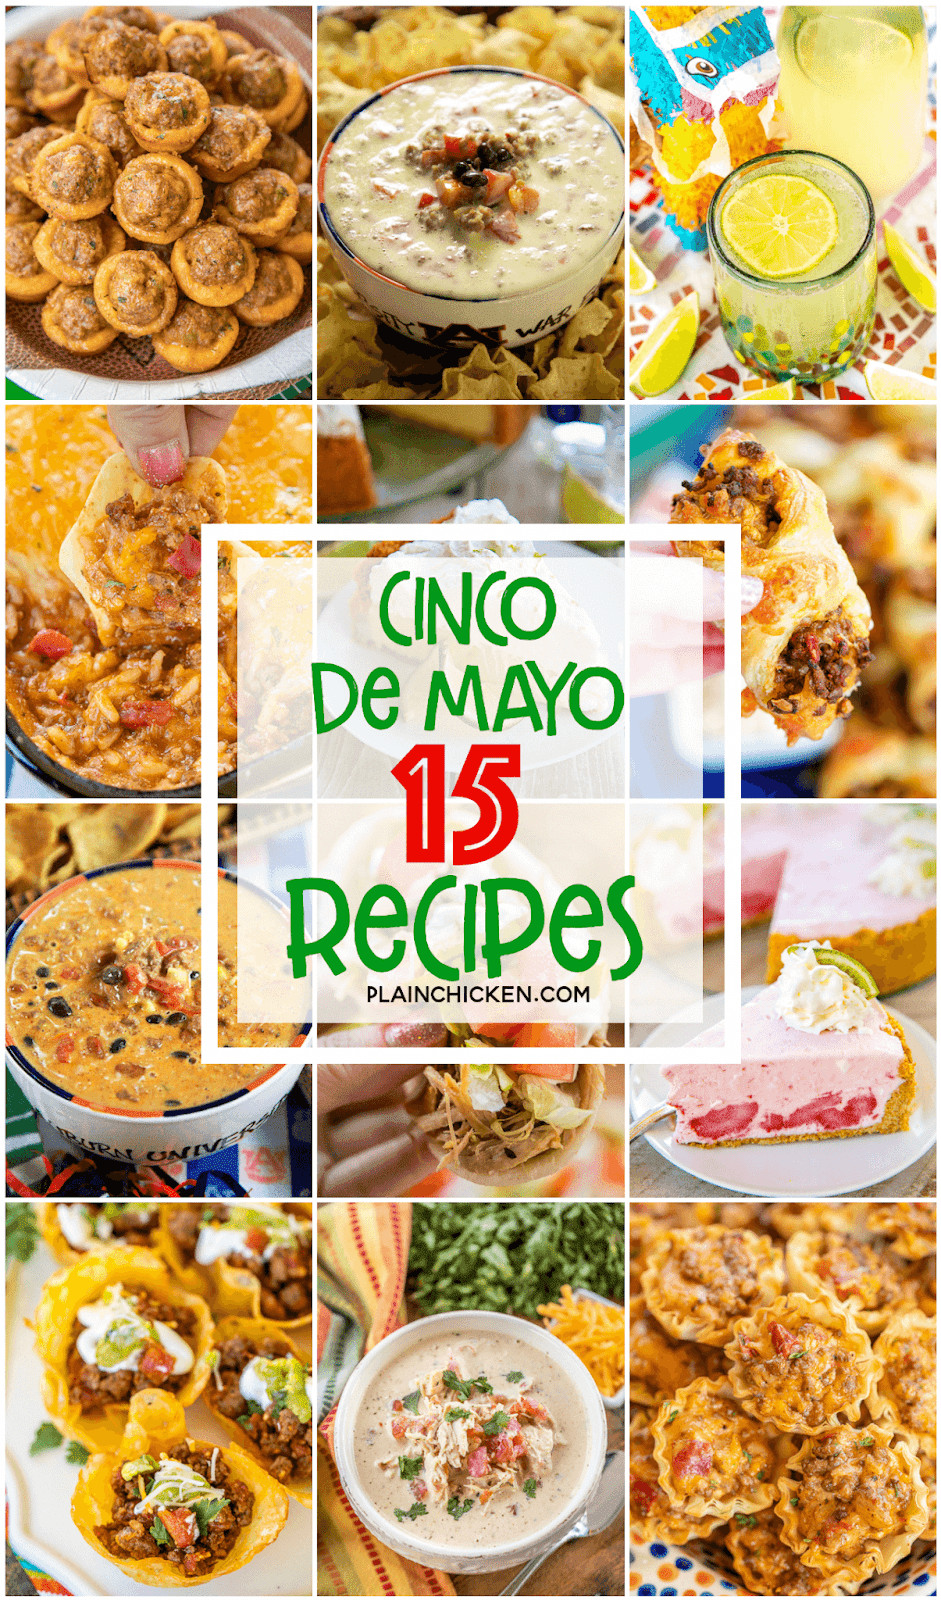 Cinco De Mayo Party Food Ideas
 15 Recipes for Your Cinco De Mayo Party